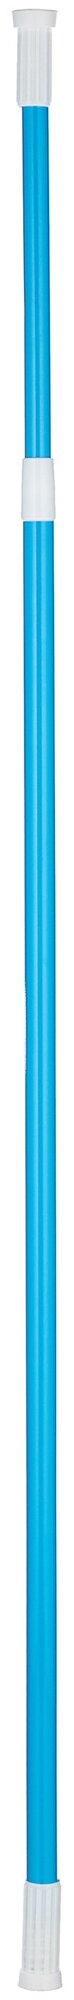 Карниз для ванной раздвижной Рыжий кот SCR-1A, 110 - 200 см, синий